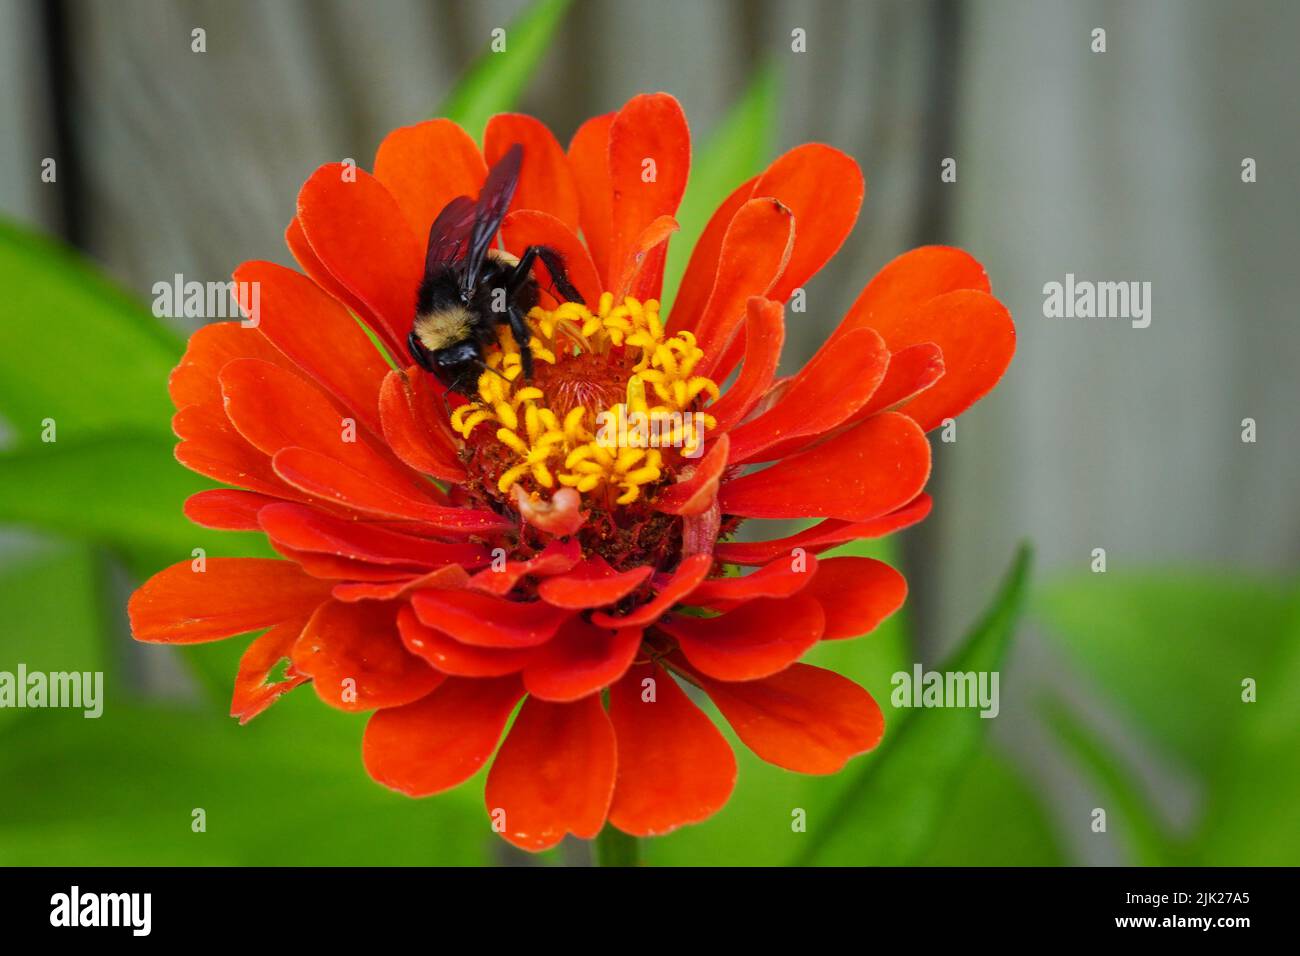 Enfoque selectivo en una abeja Bumble recolectando polen y néctar de una flor roja de Zinnia Foto de stock